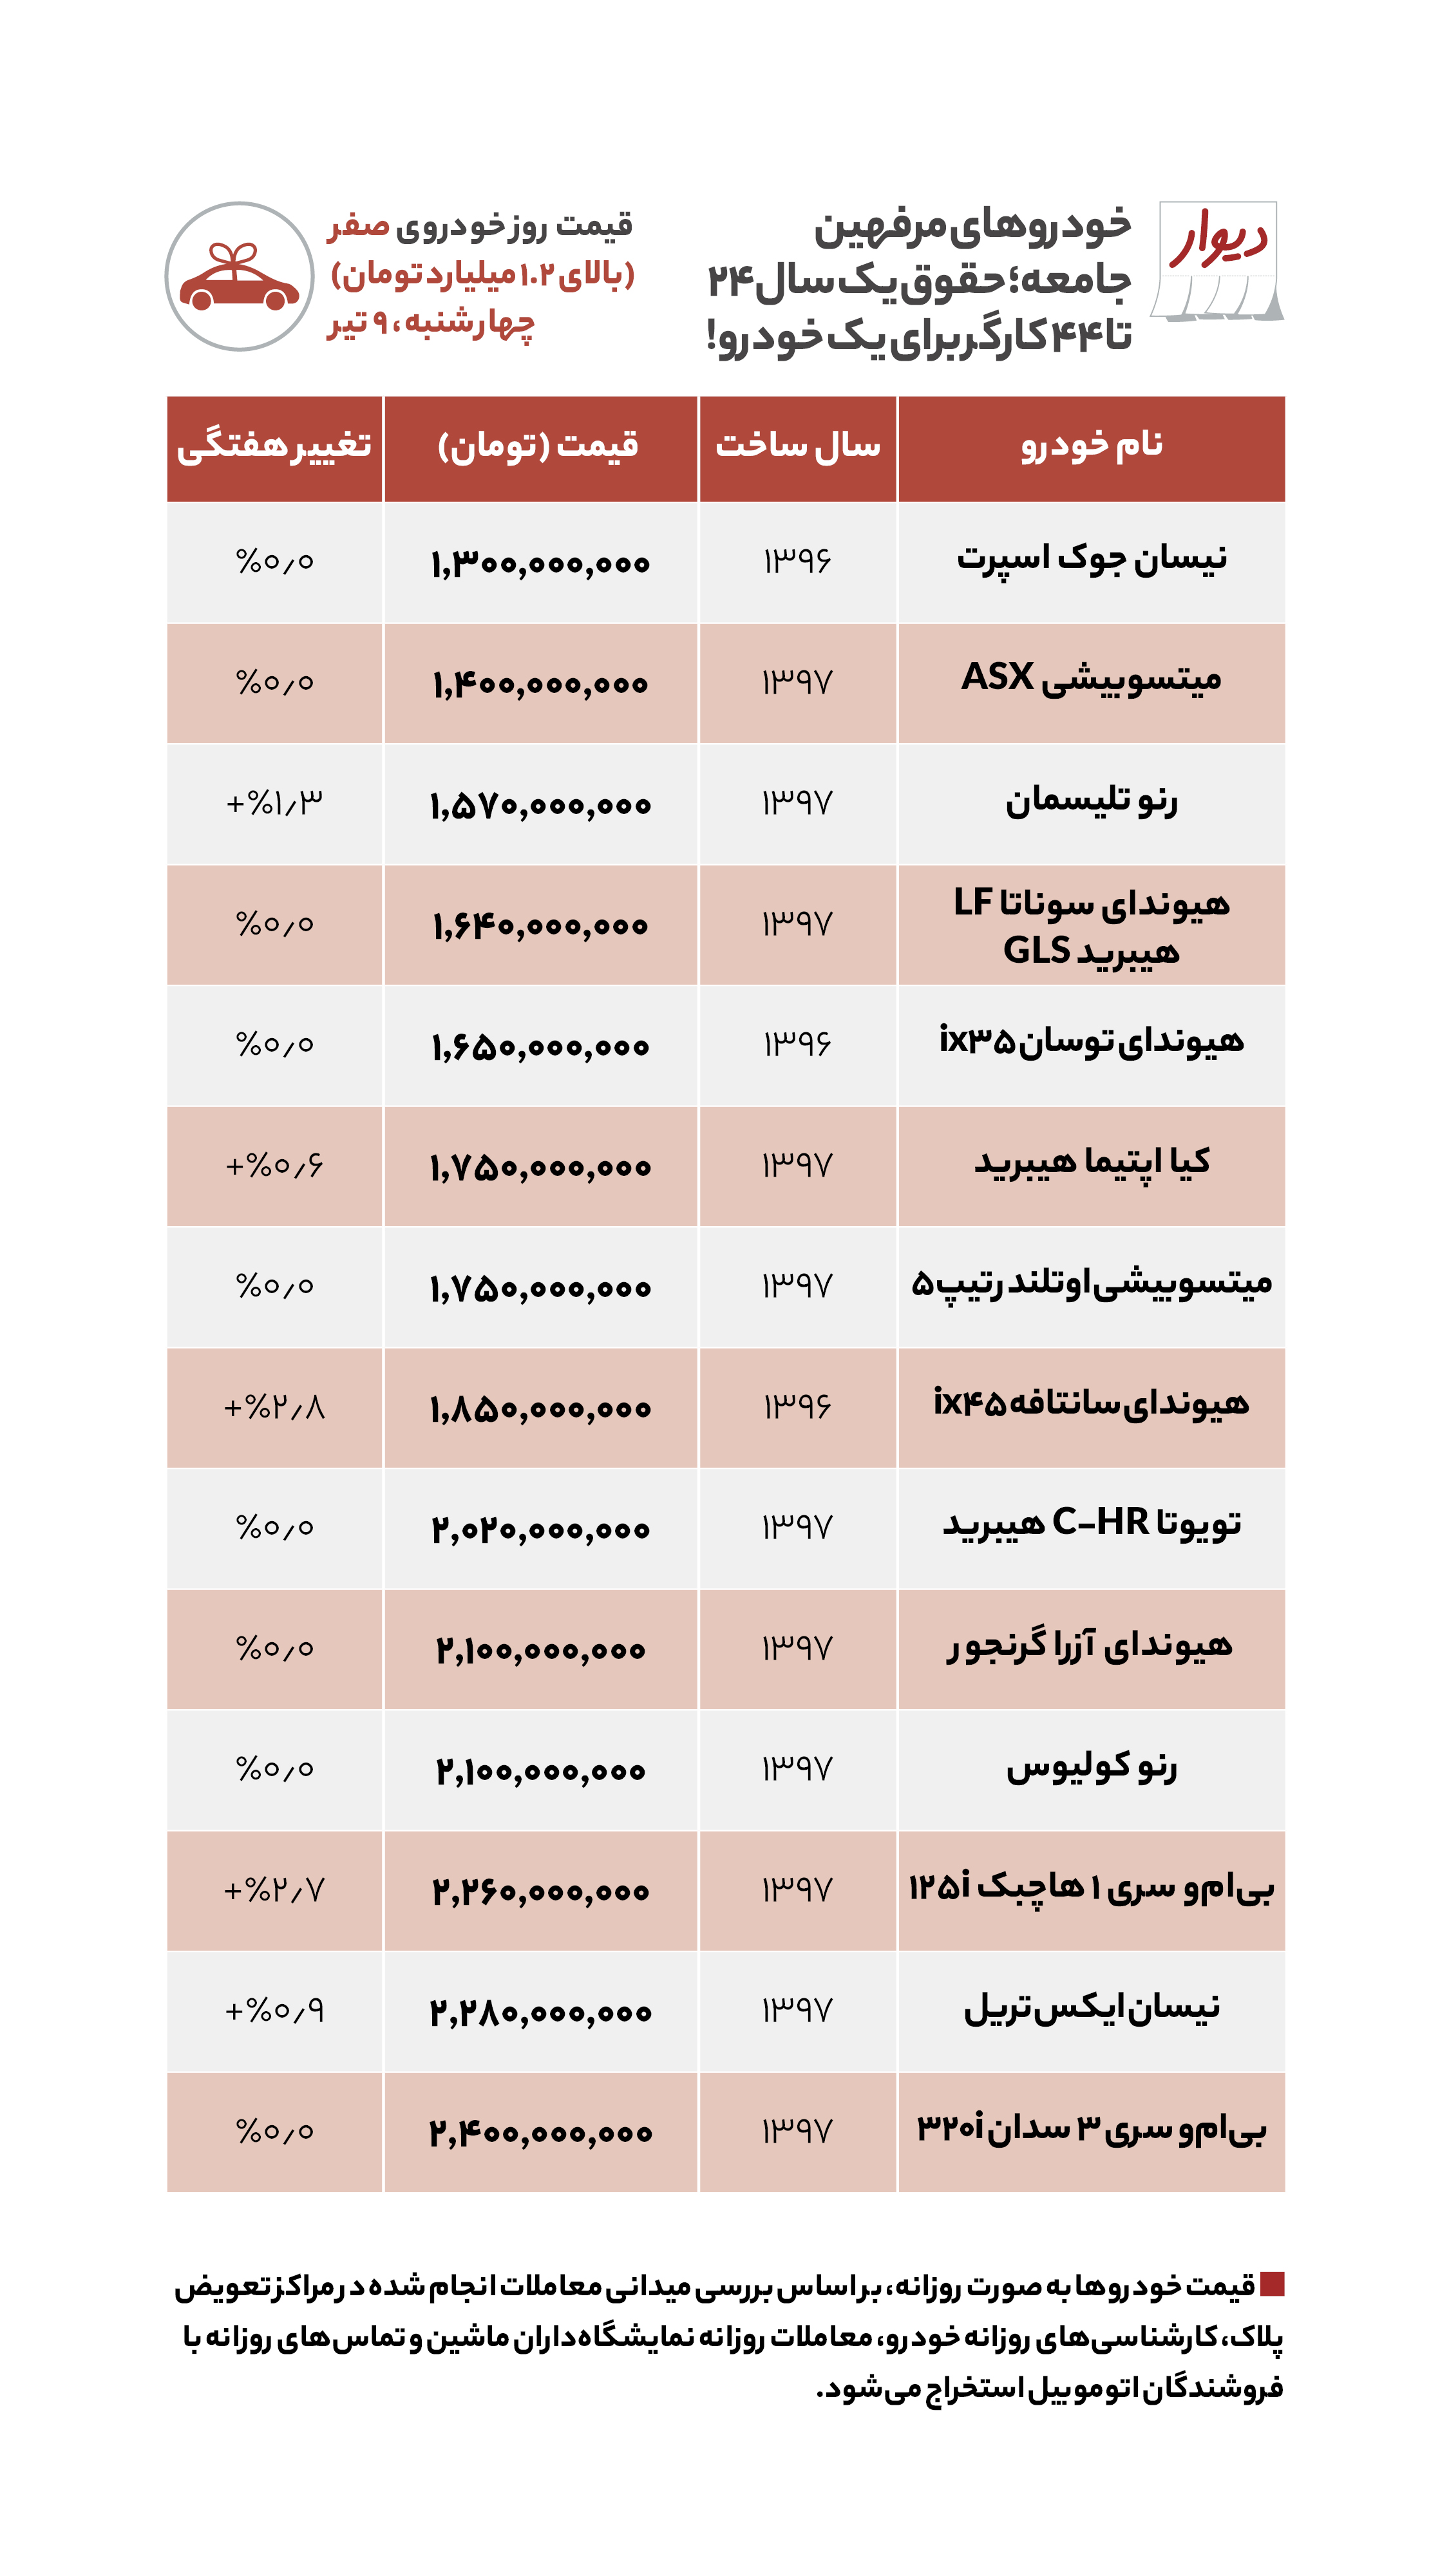 مقایسه قیمت مسکن در جنوب و مرکز تهران